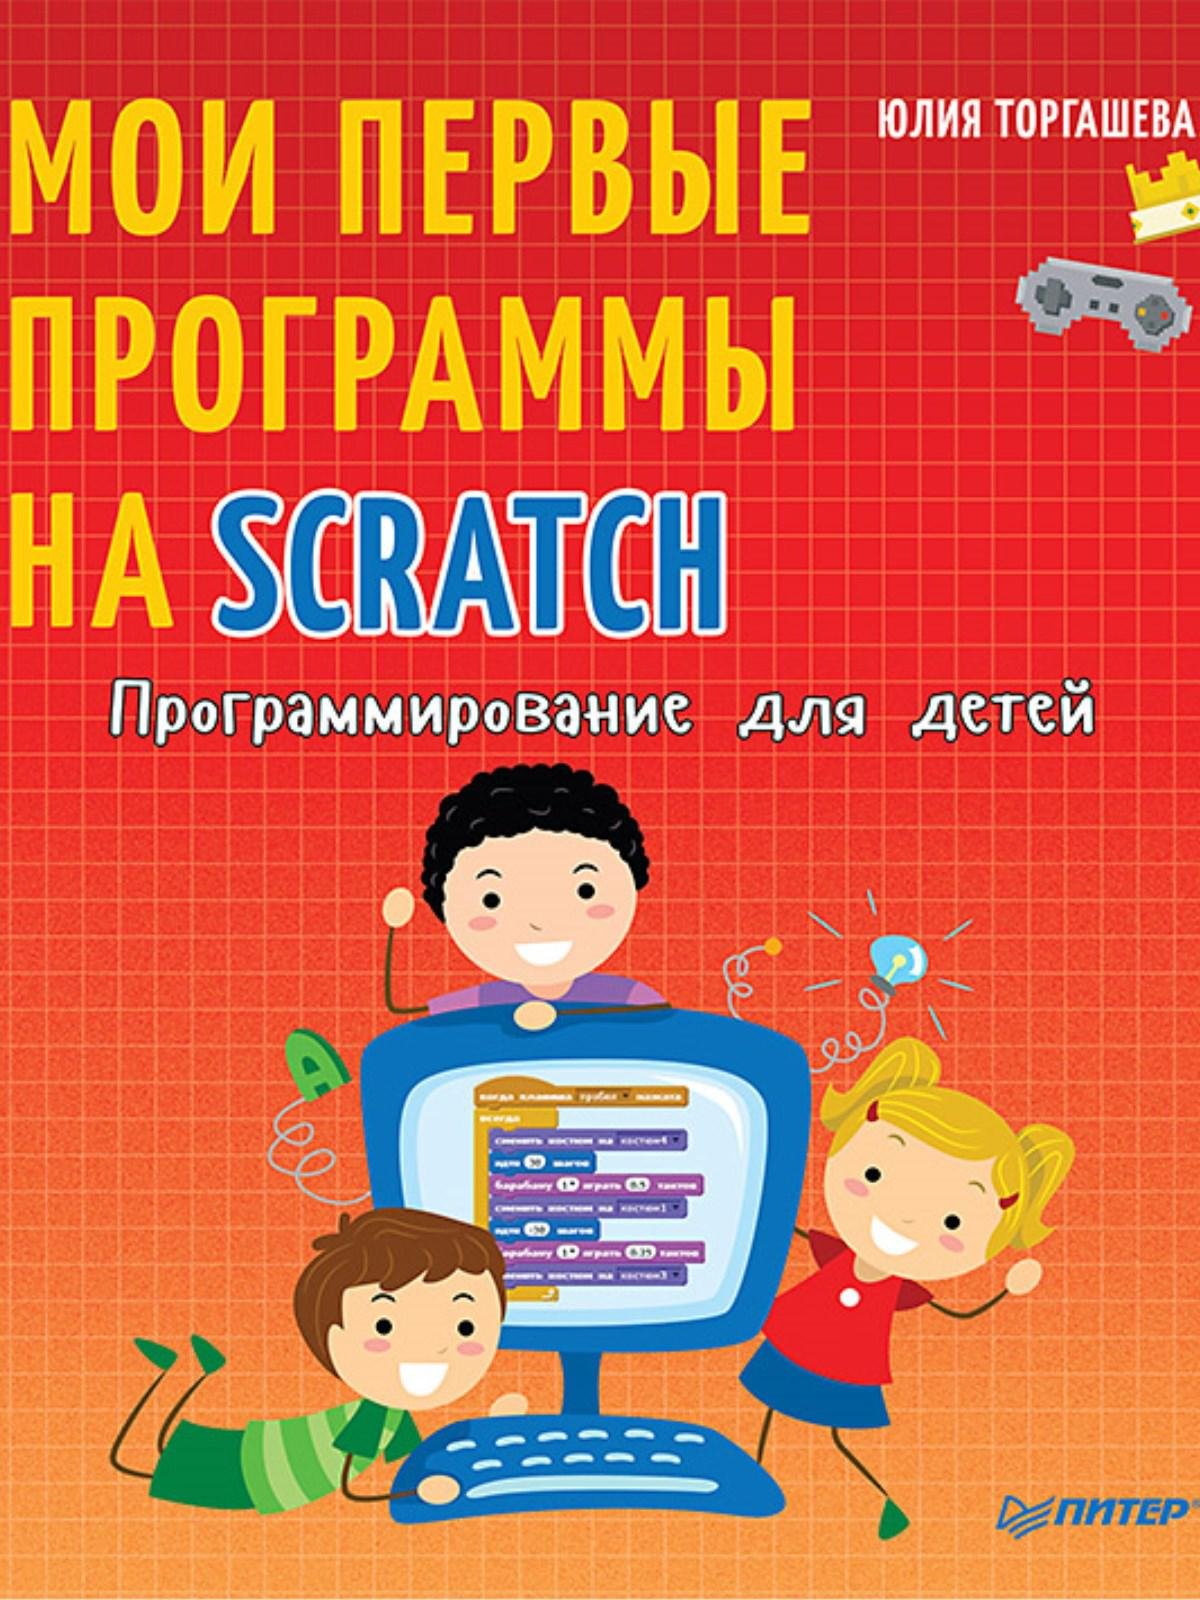 Программирование для детей. Мои первые программы на Scratch. Торгашева Ю В